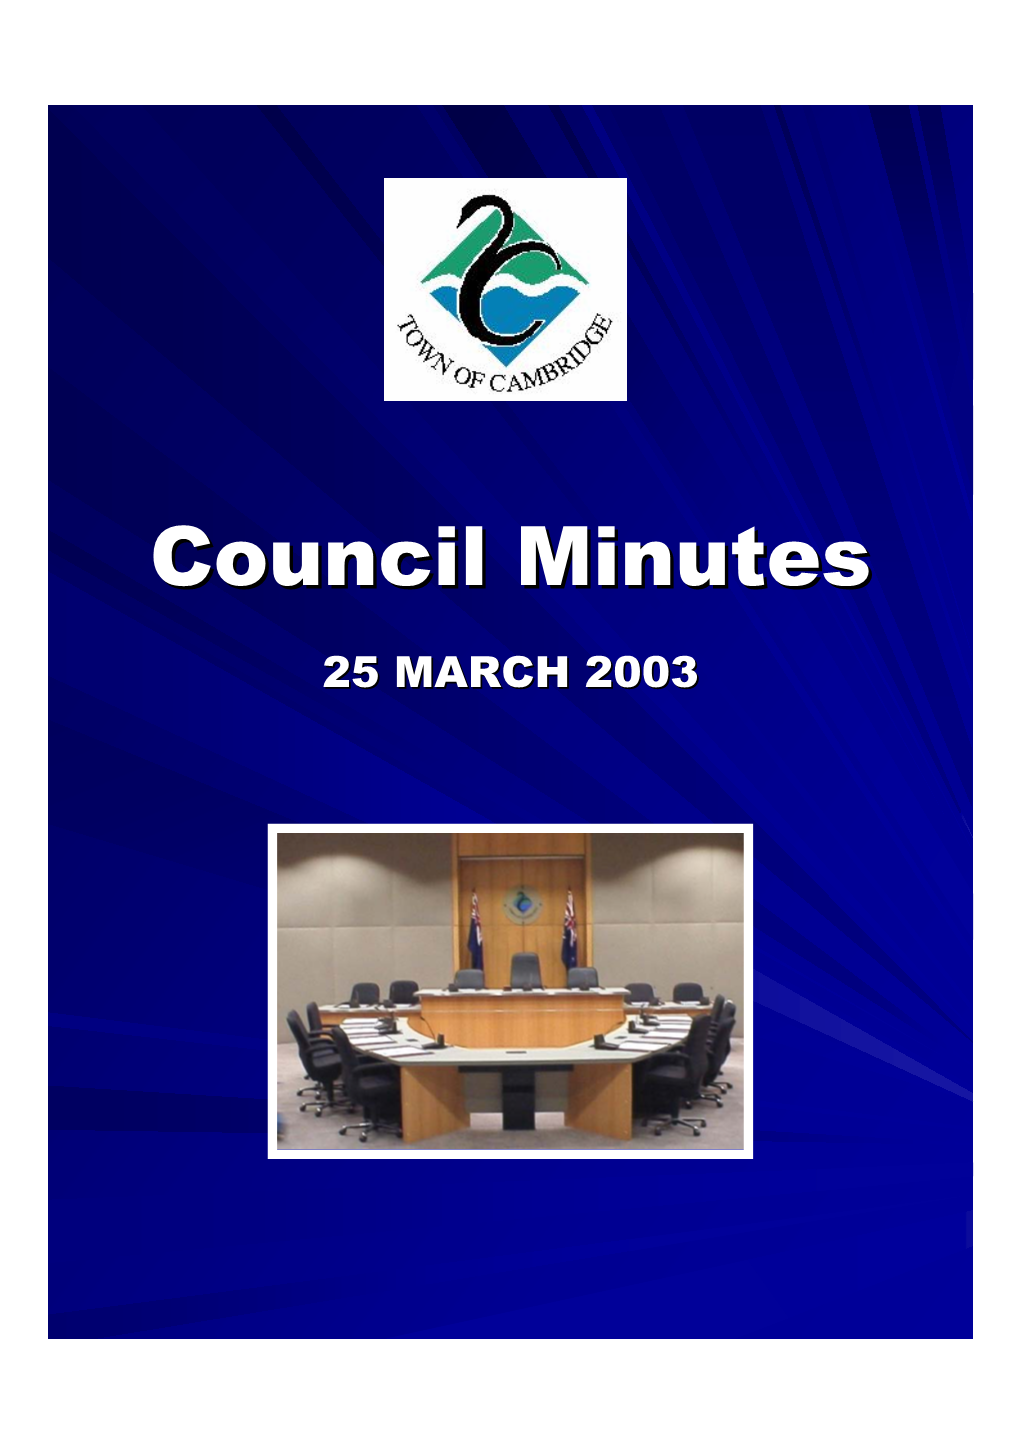 Council Minutesminutes